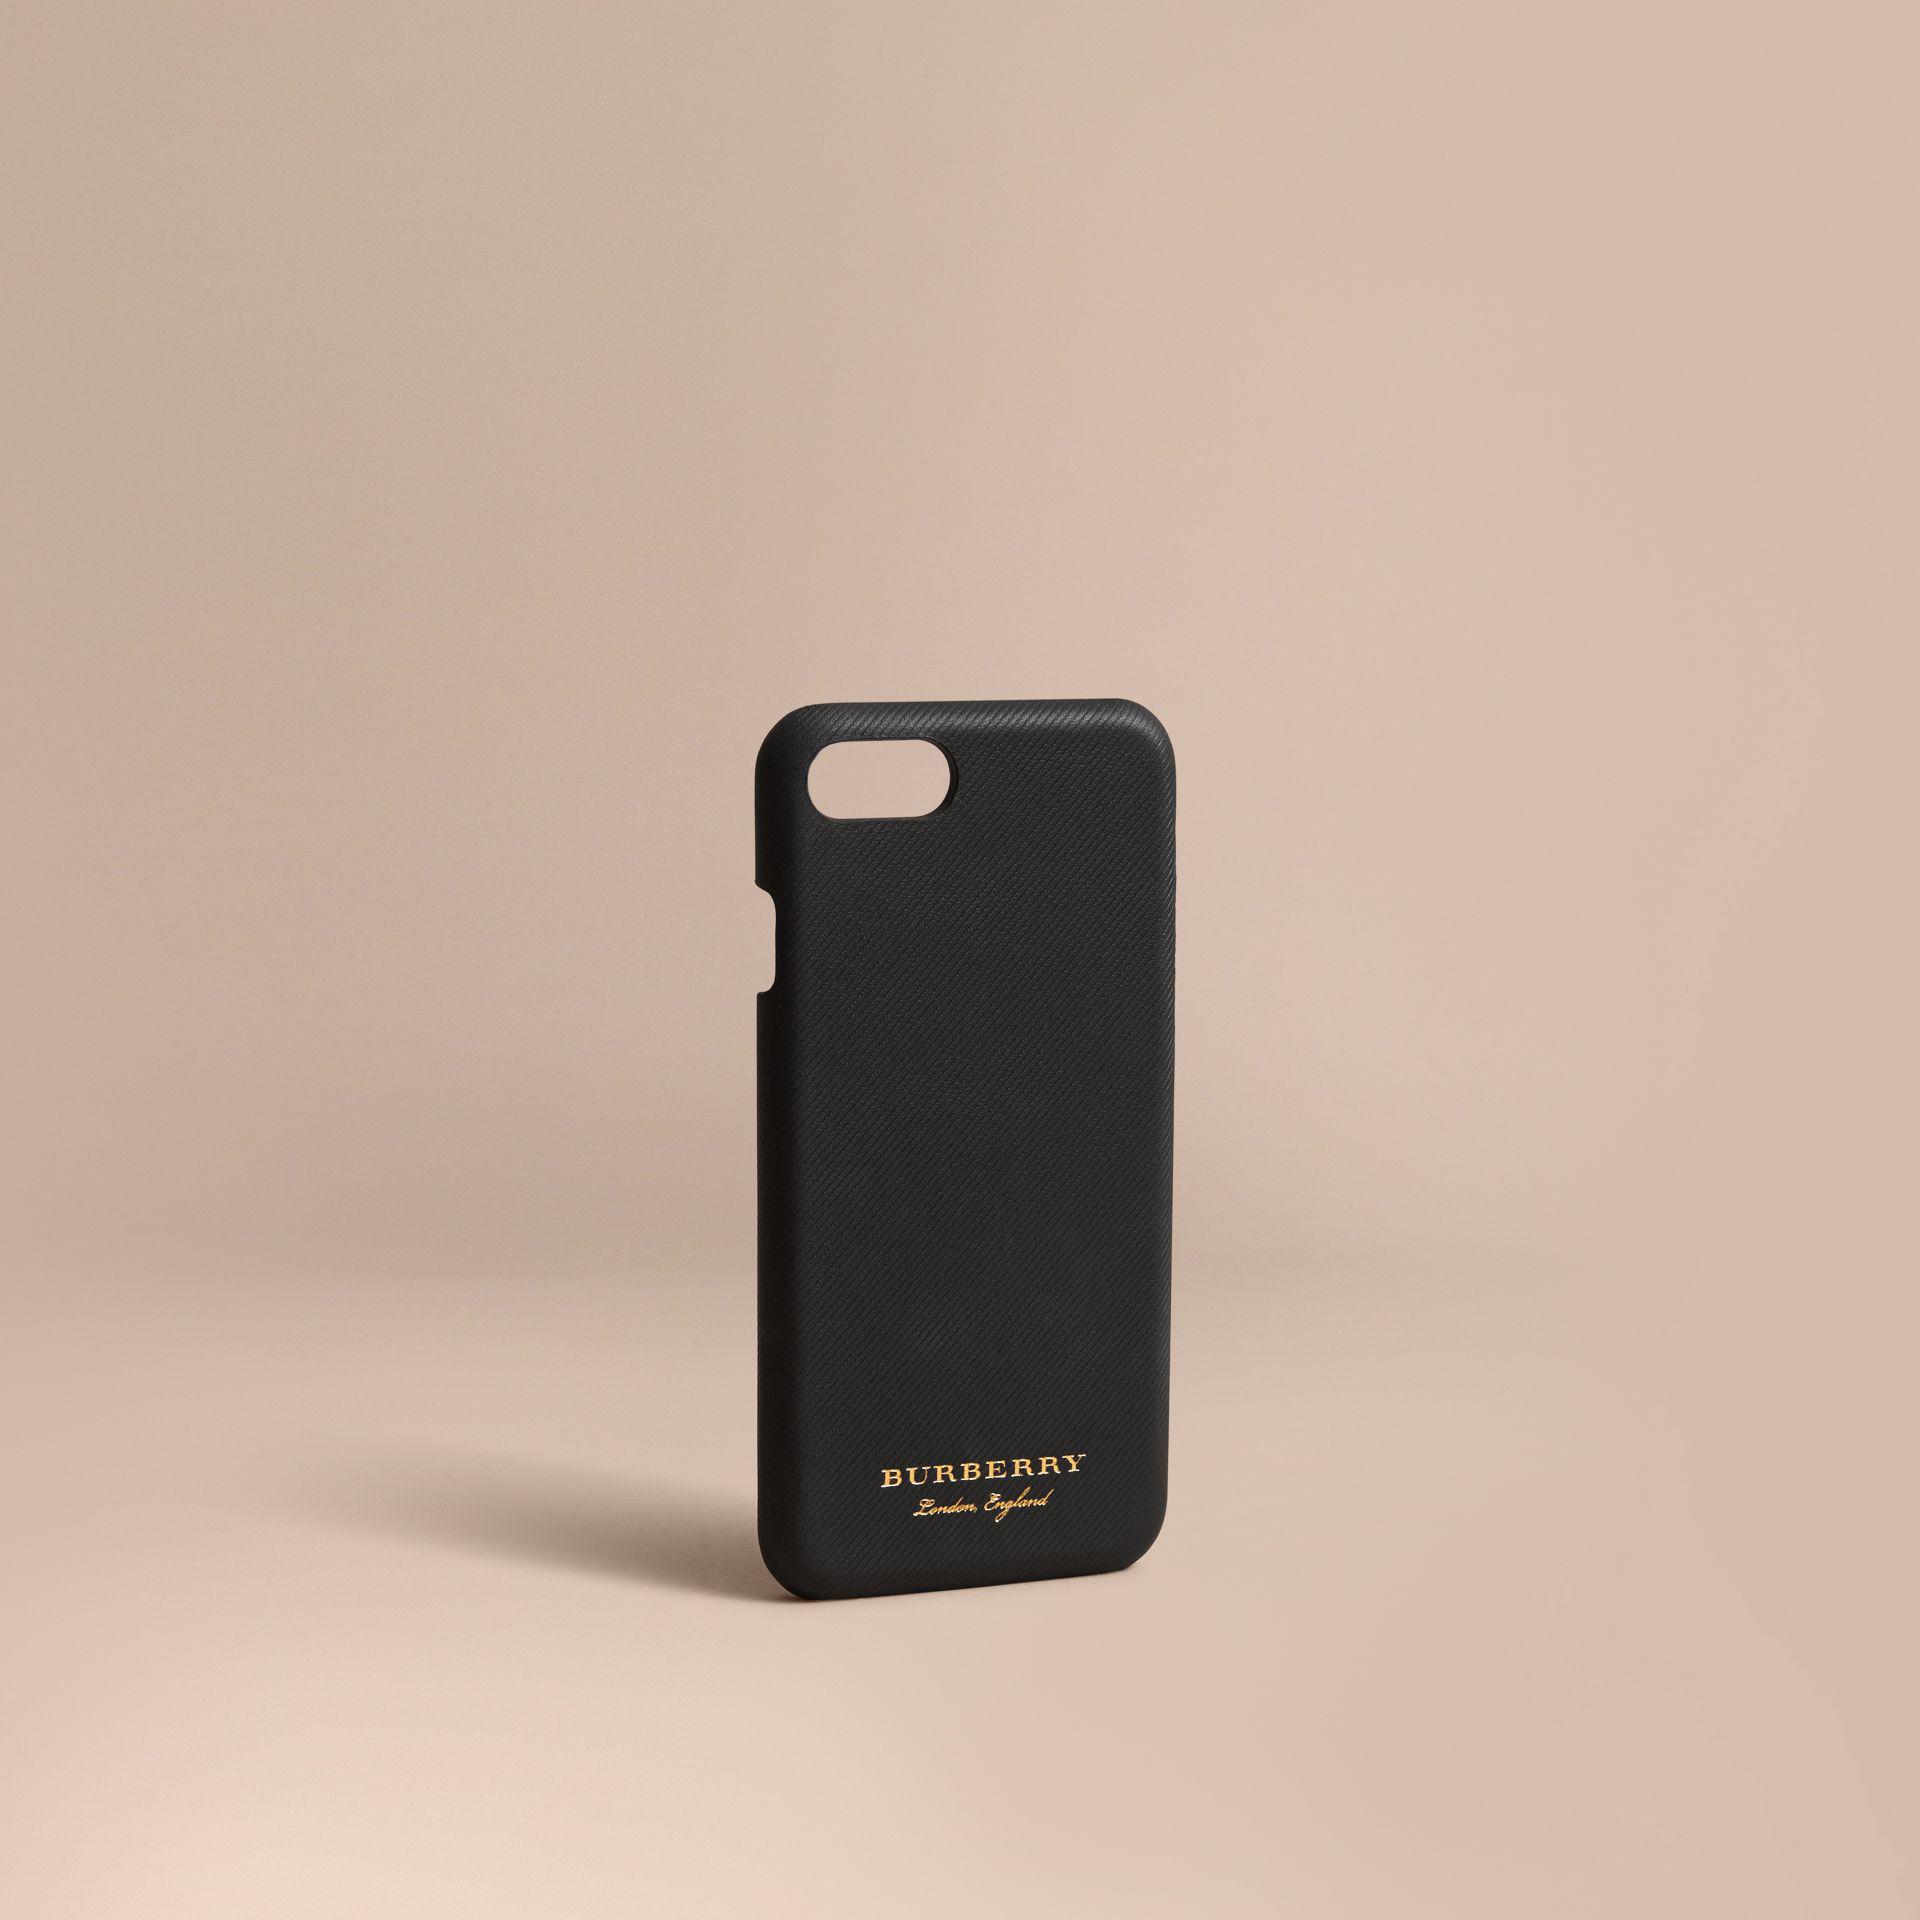 burberry phone case iphone 7 plus